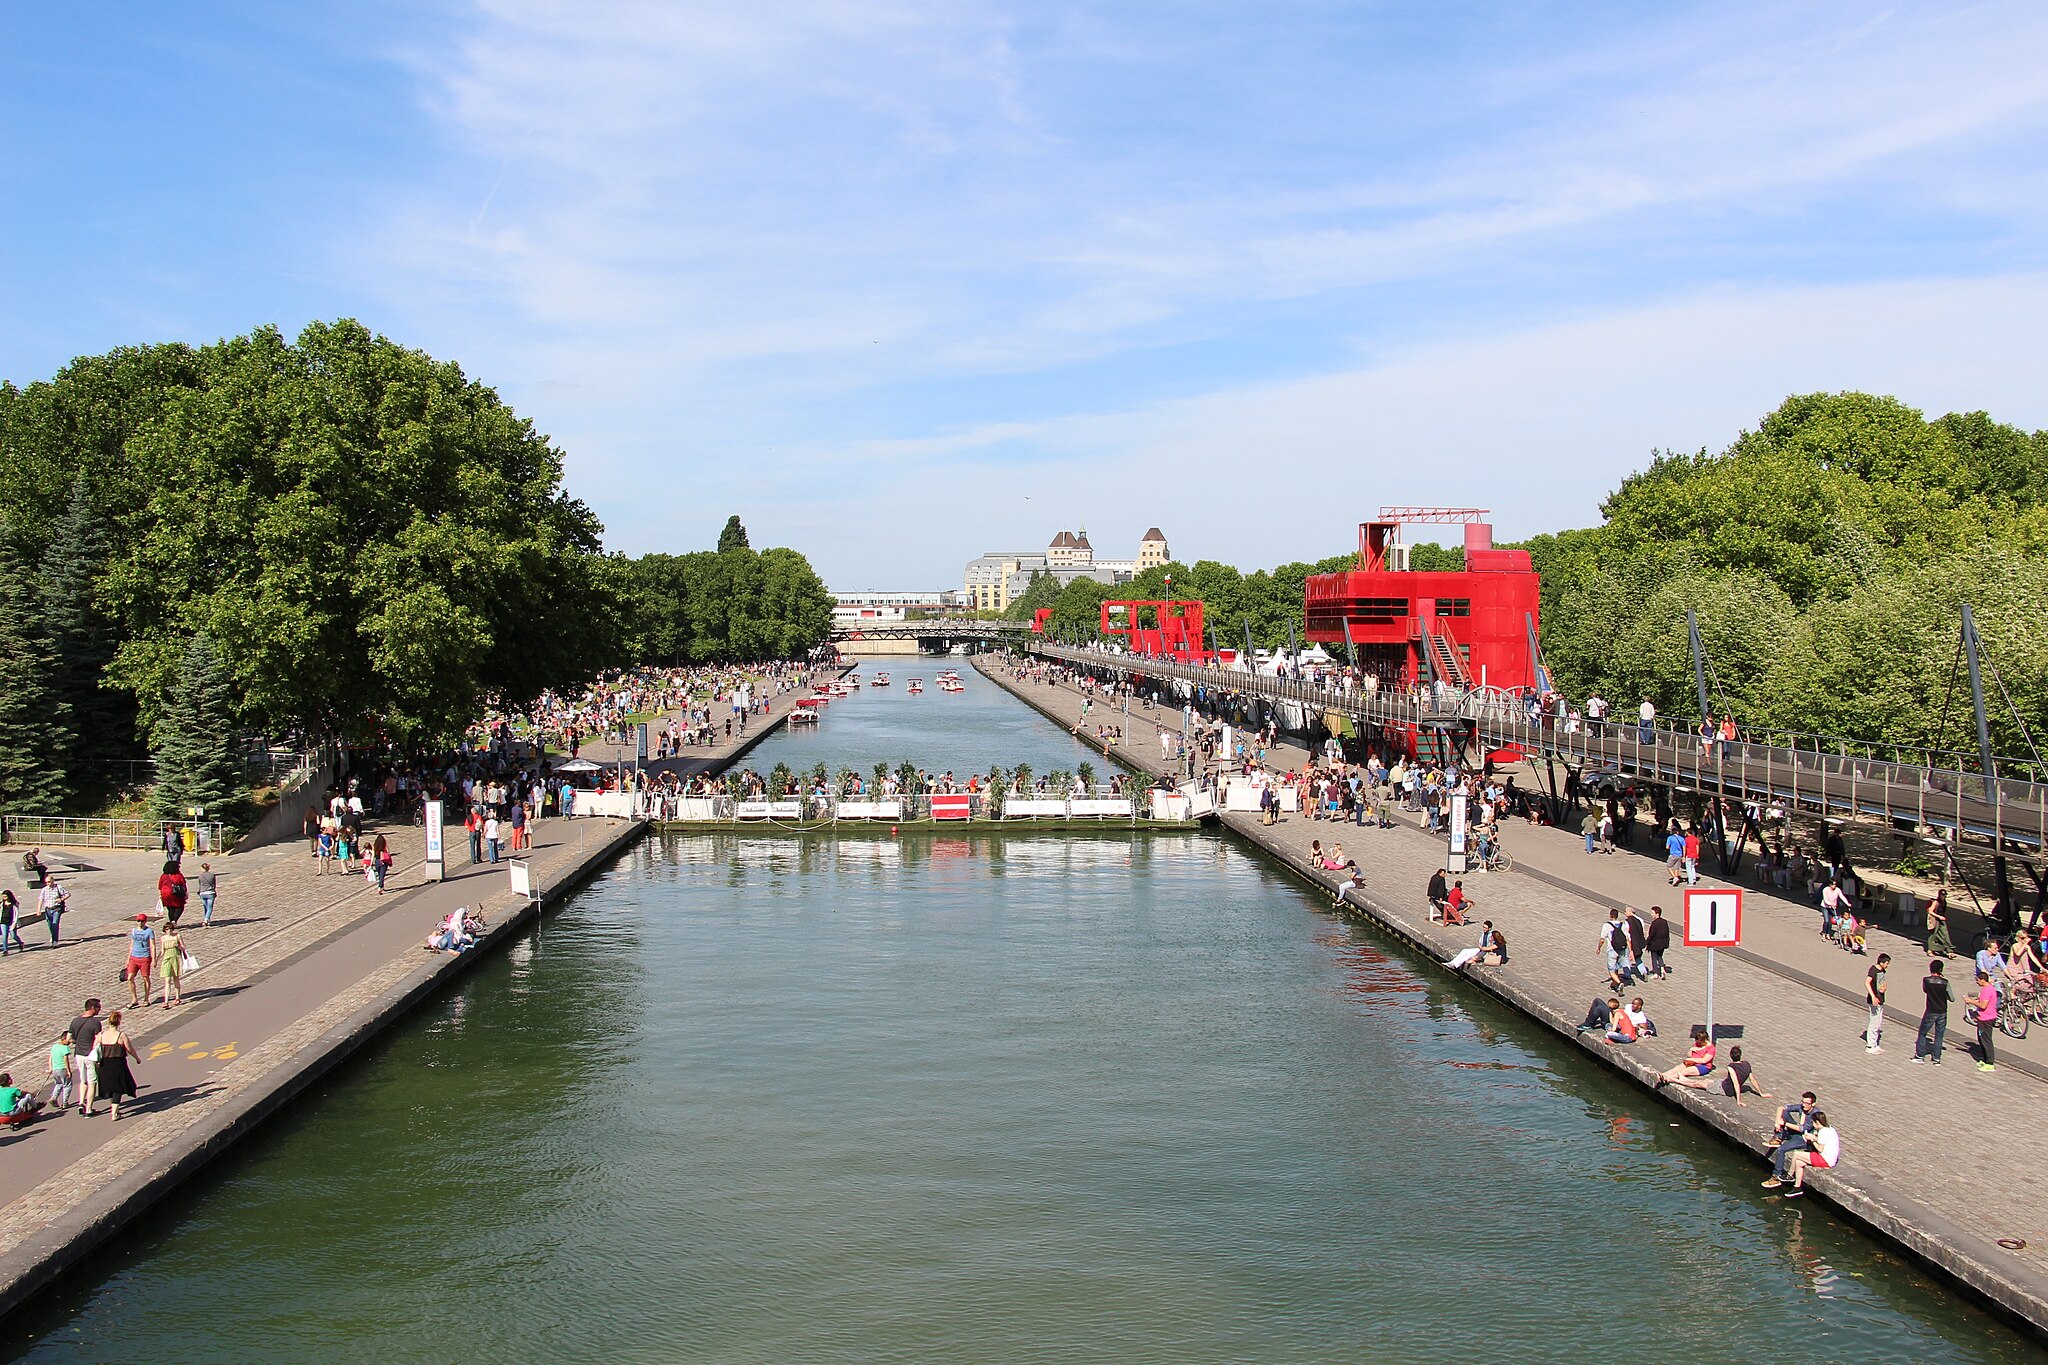 Paris - Canal de l'Ourcq (23415256272)